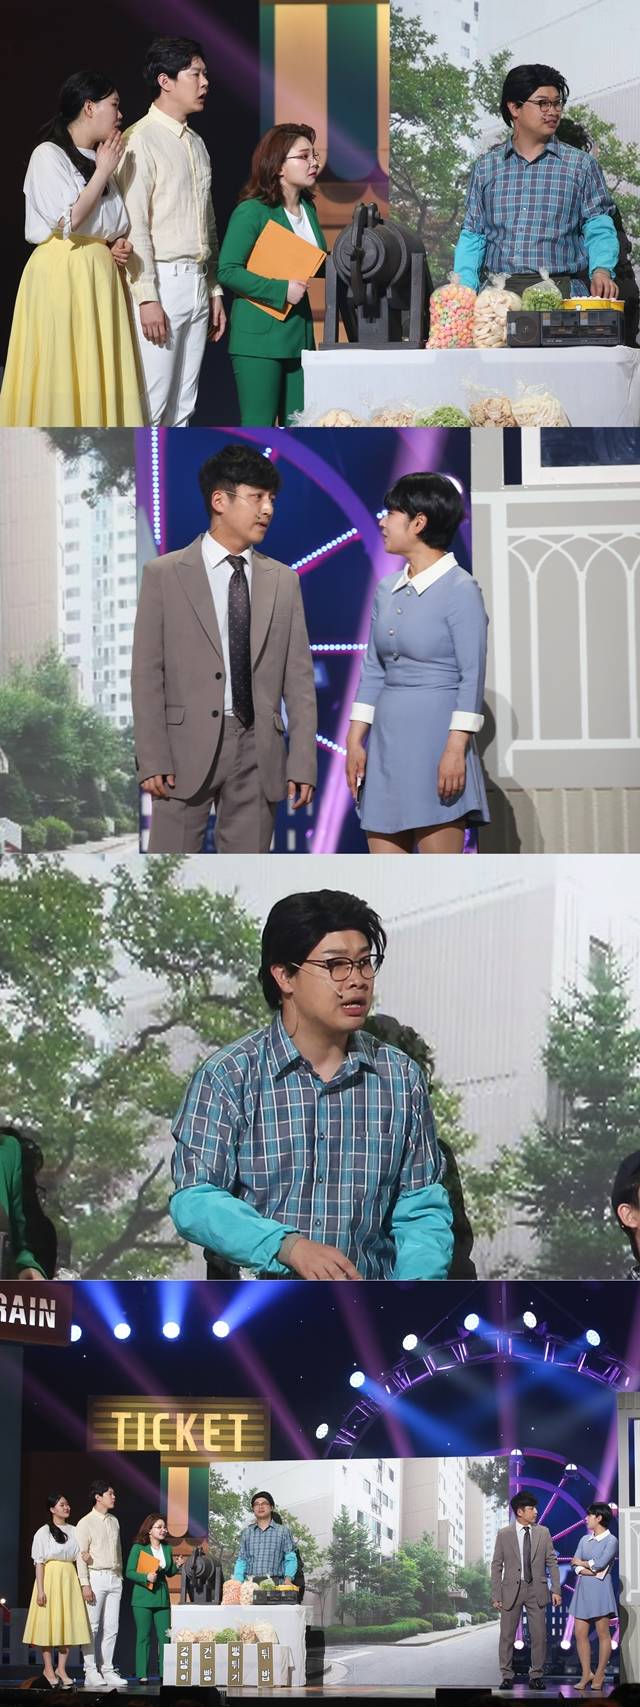 개그맨 이창윤과 전수희가 역대급 다툼 연기로 웃음을 선사한다. /KBS 제공